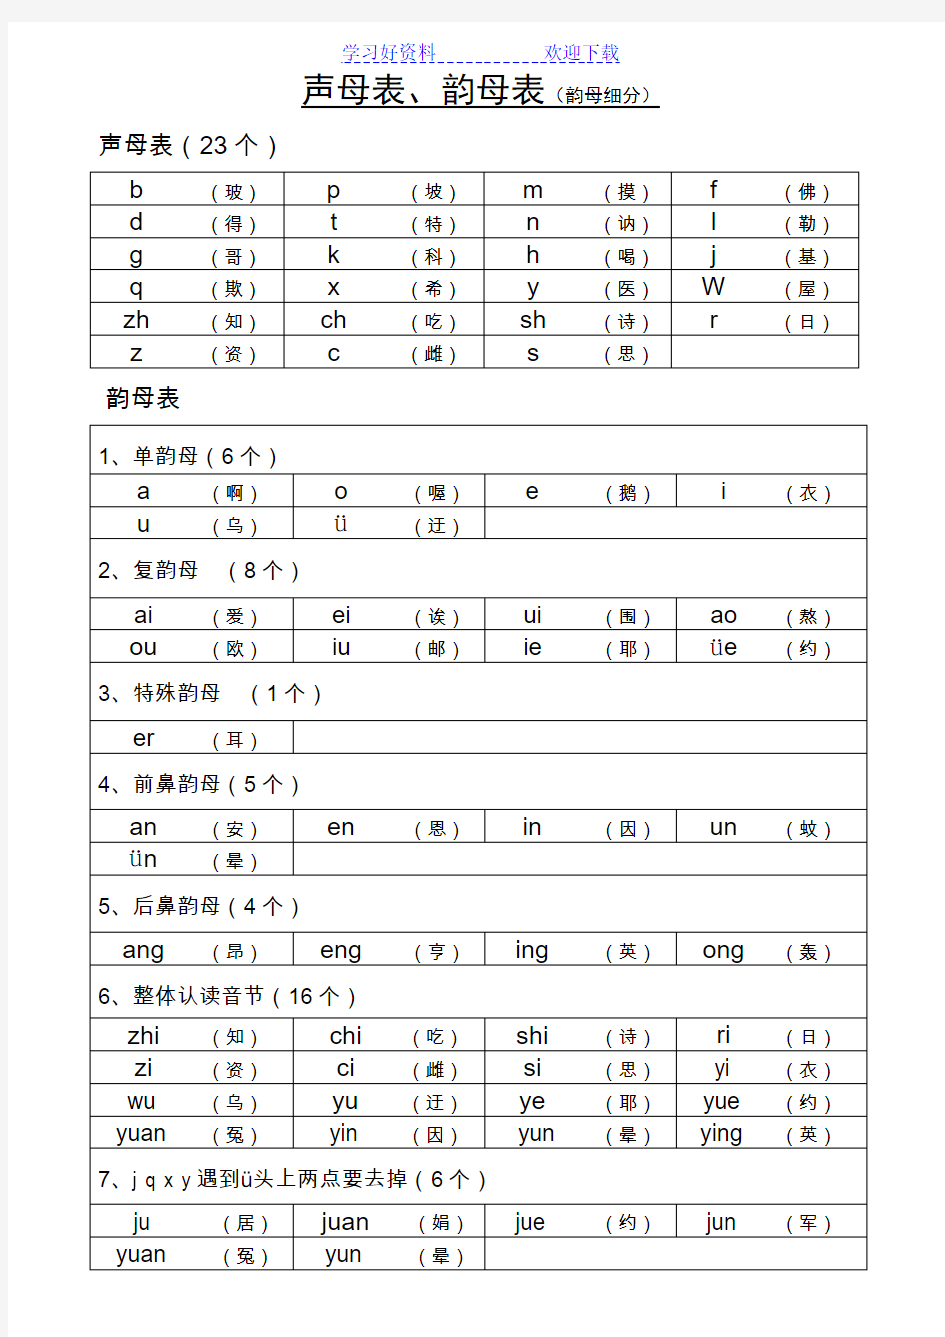 声母表和韵母表汉语拼音音节表(排版清晰内容准确便于孩子或成人自学)